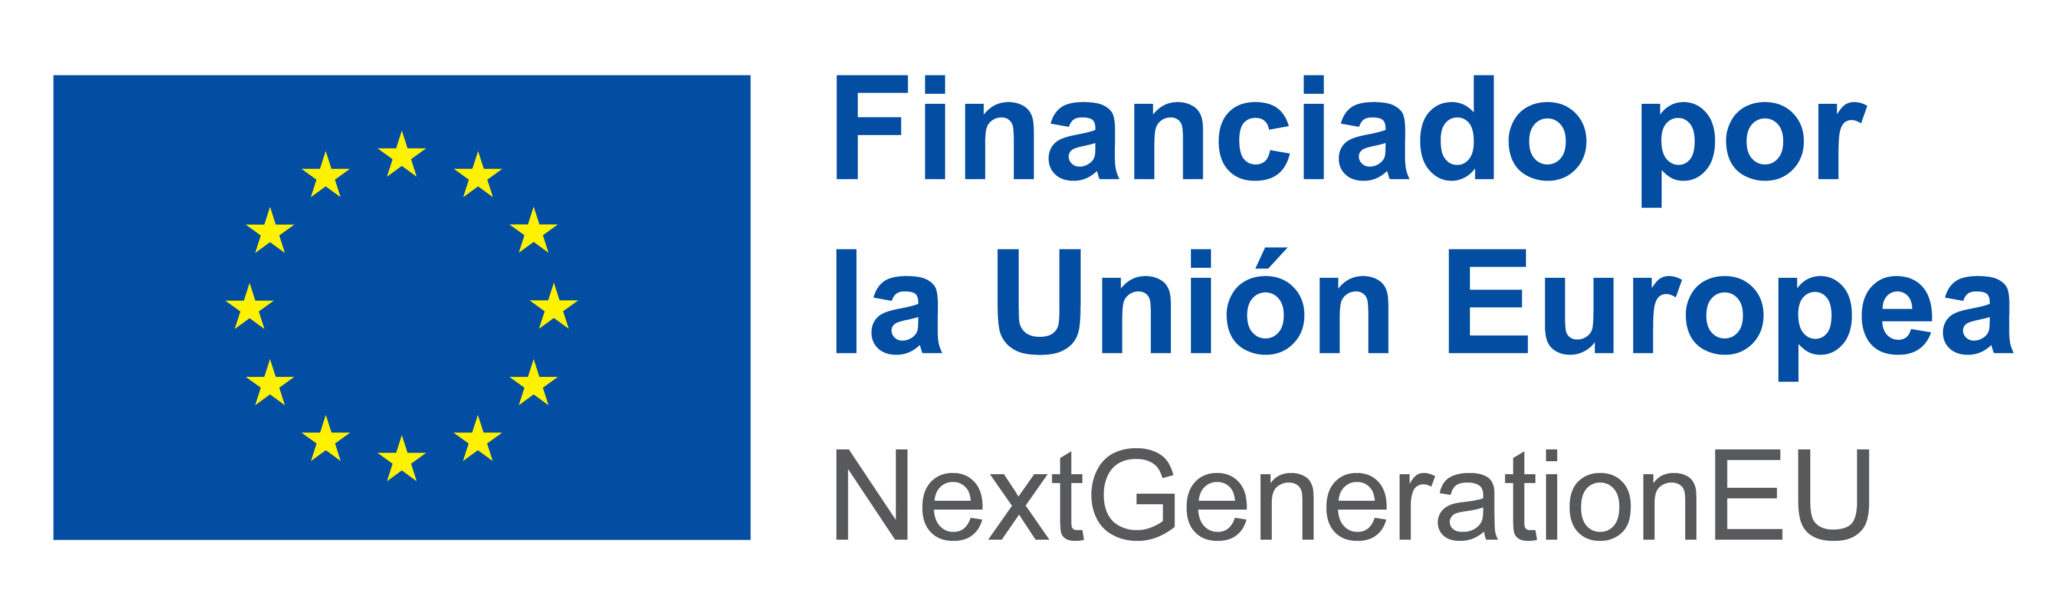 Logotipo de Financiado por la Unión Europea.